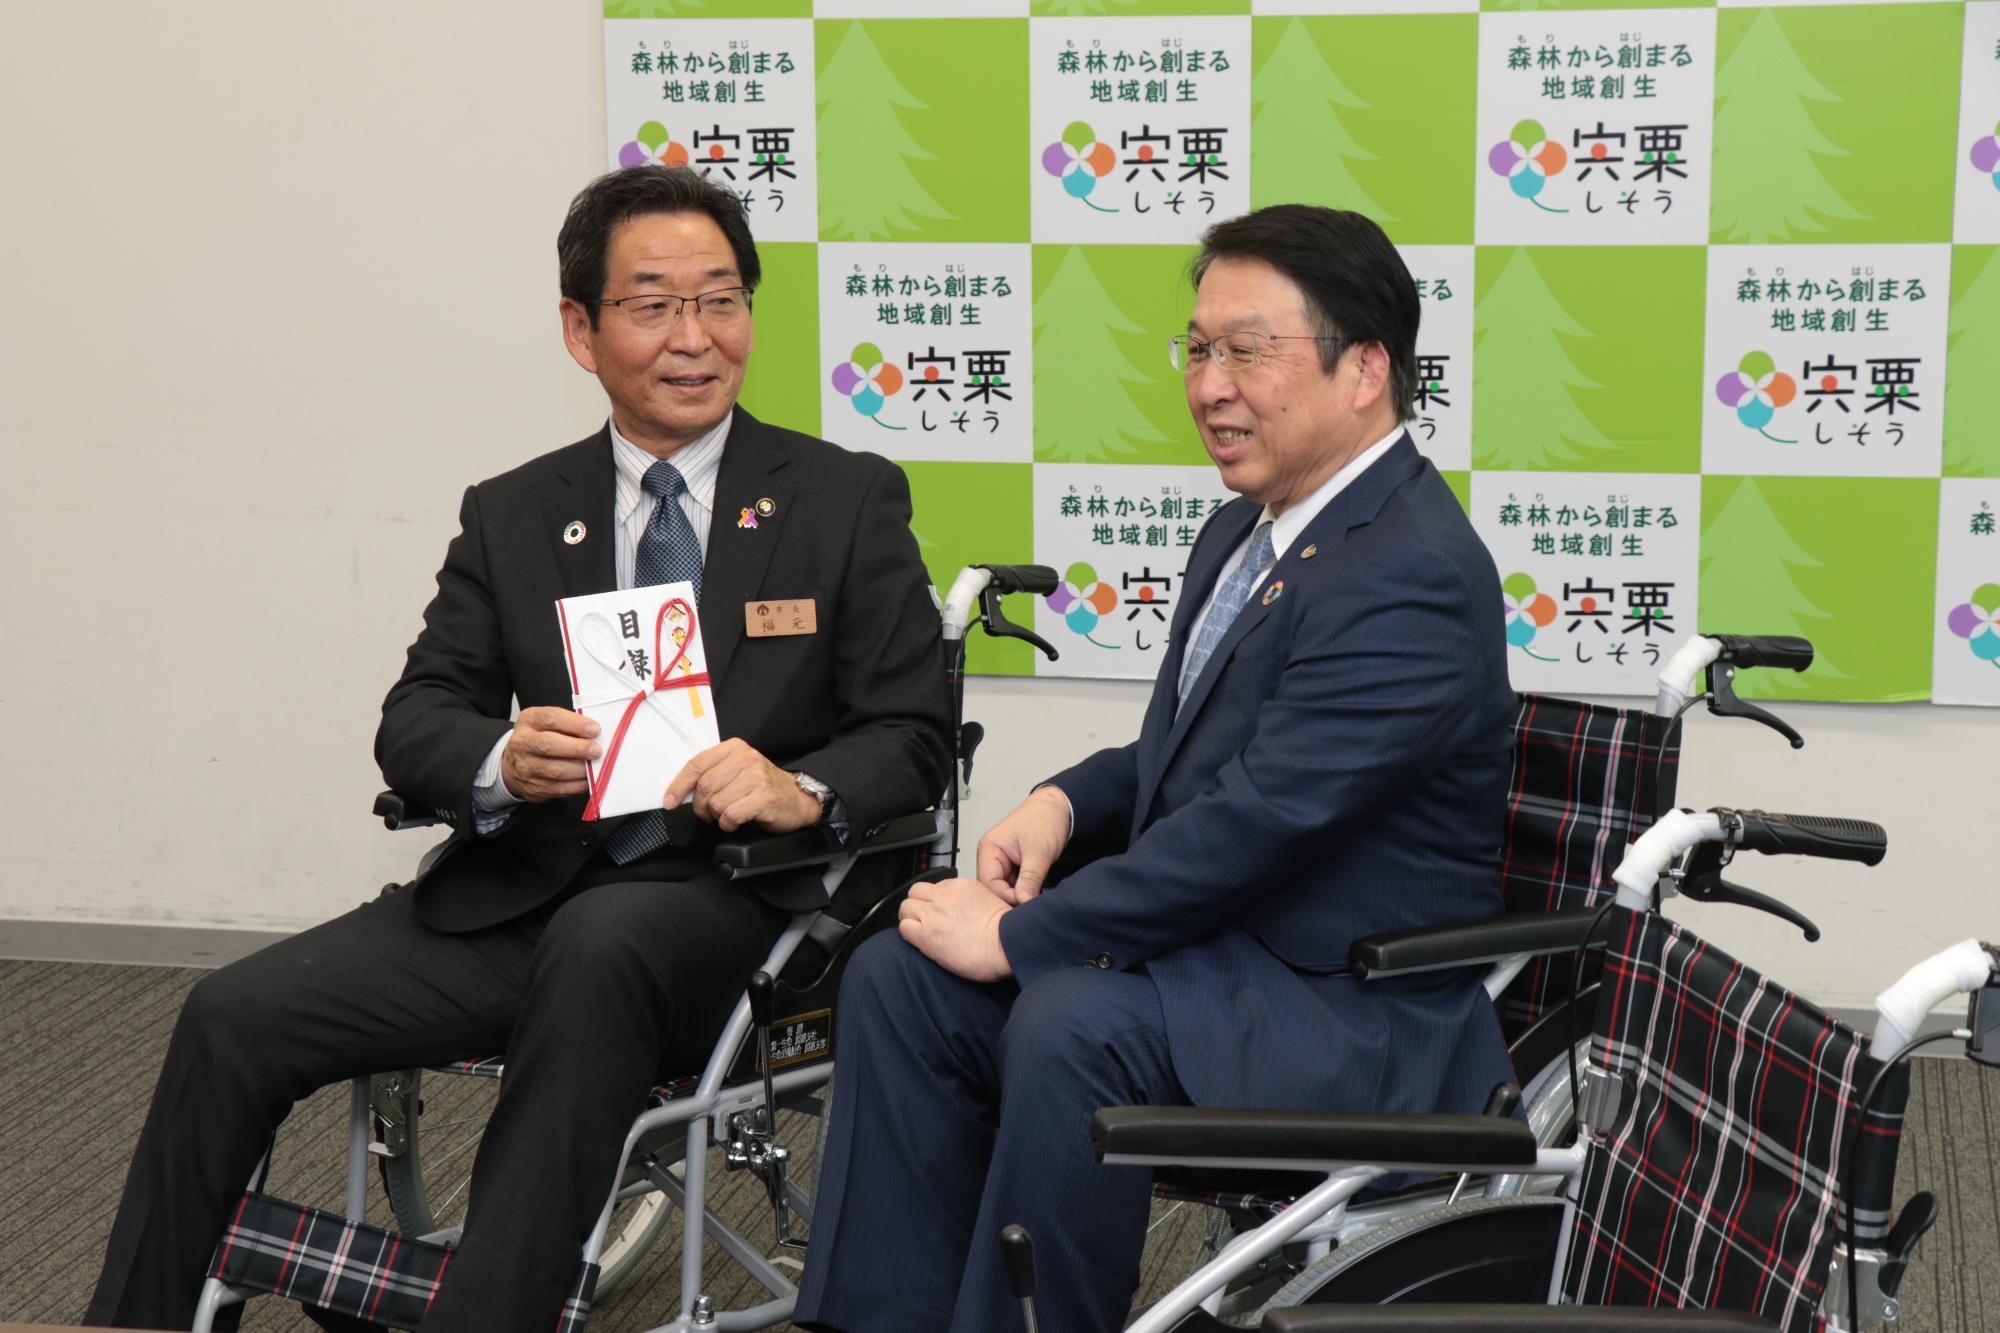 左は目録を手にした福元市長、右は株式会社第一生命姫路支社長が寄贈された車いすに座っている写真